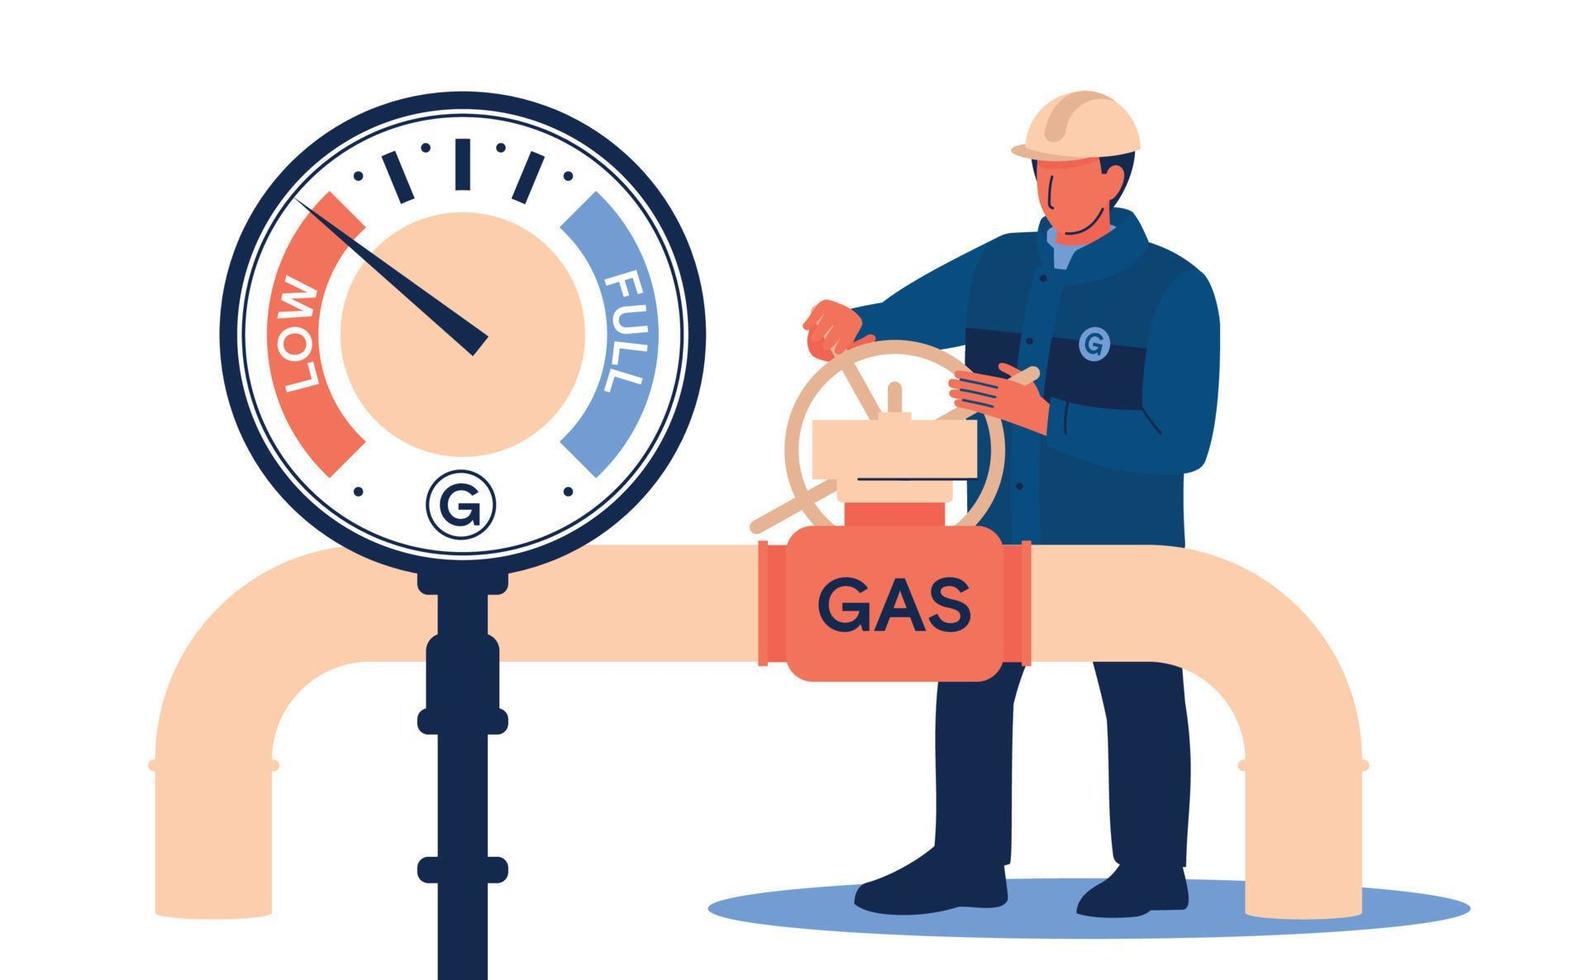 gas dalla russia. sanzioni. un lavoratore di sesso maschile gira una valvola su un gasdotto. immagine vettoriale. vettore